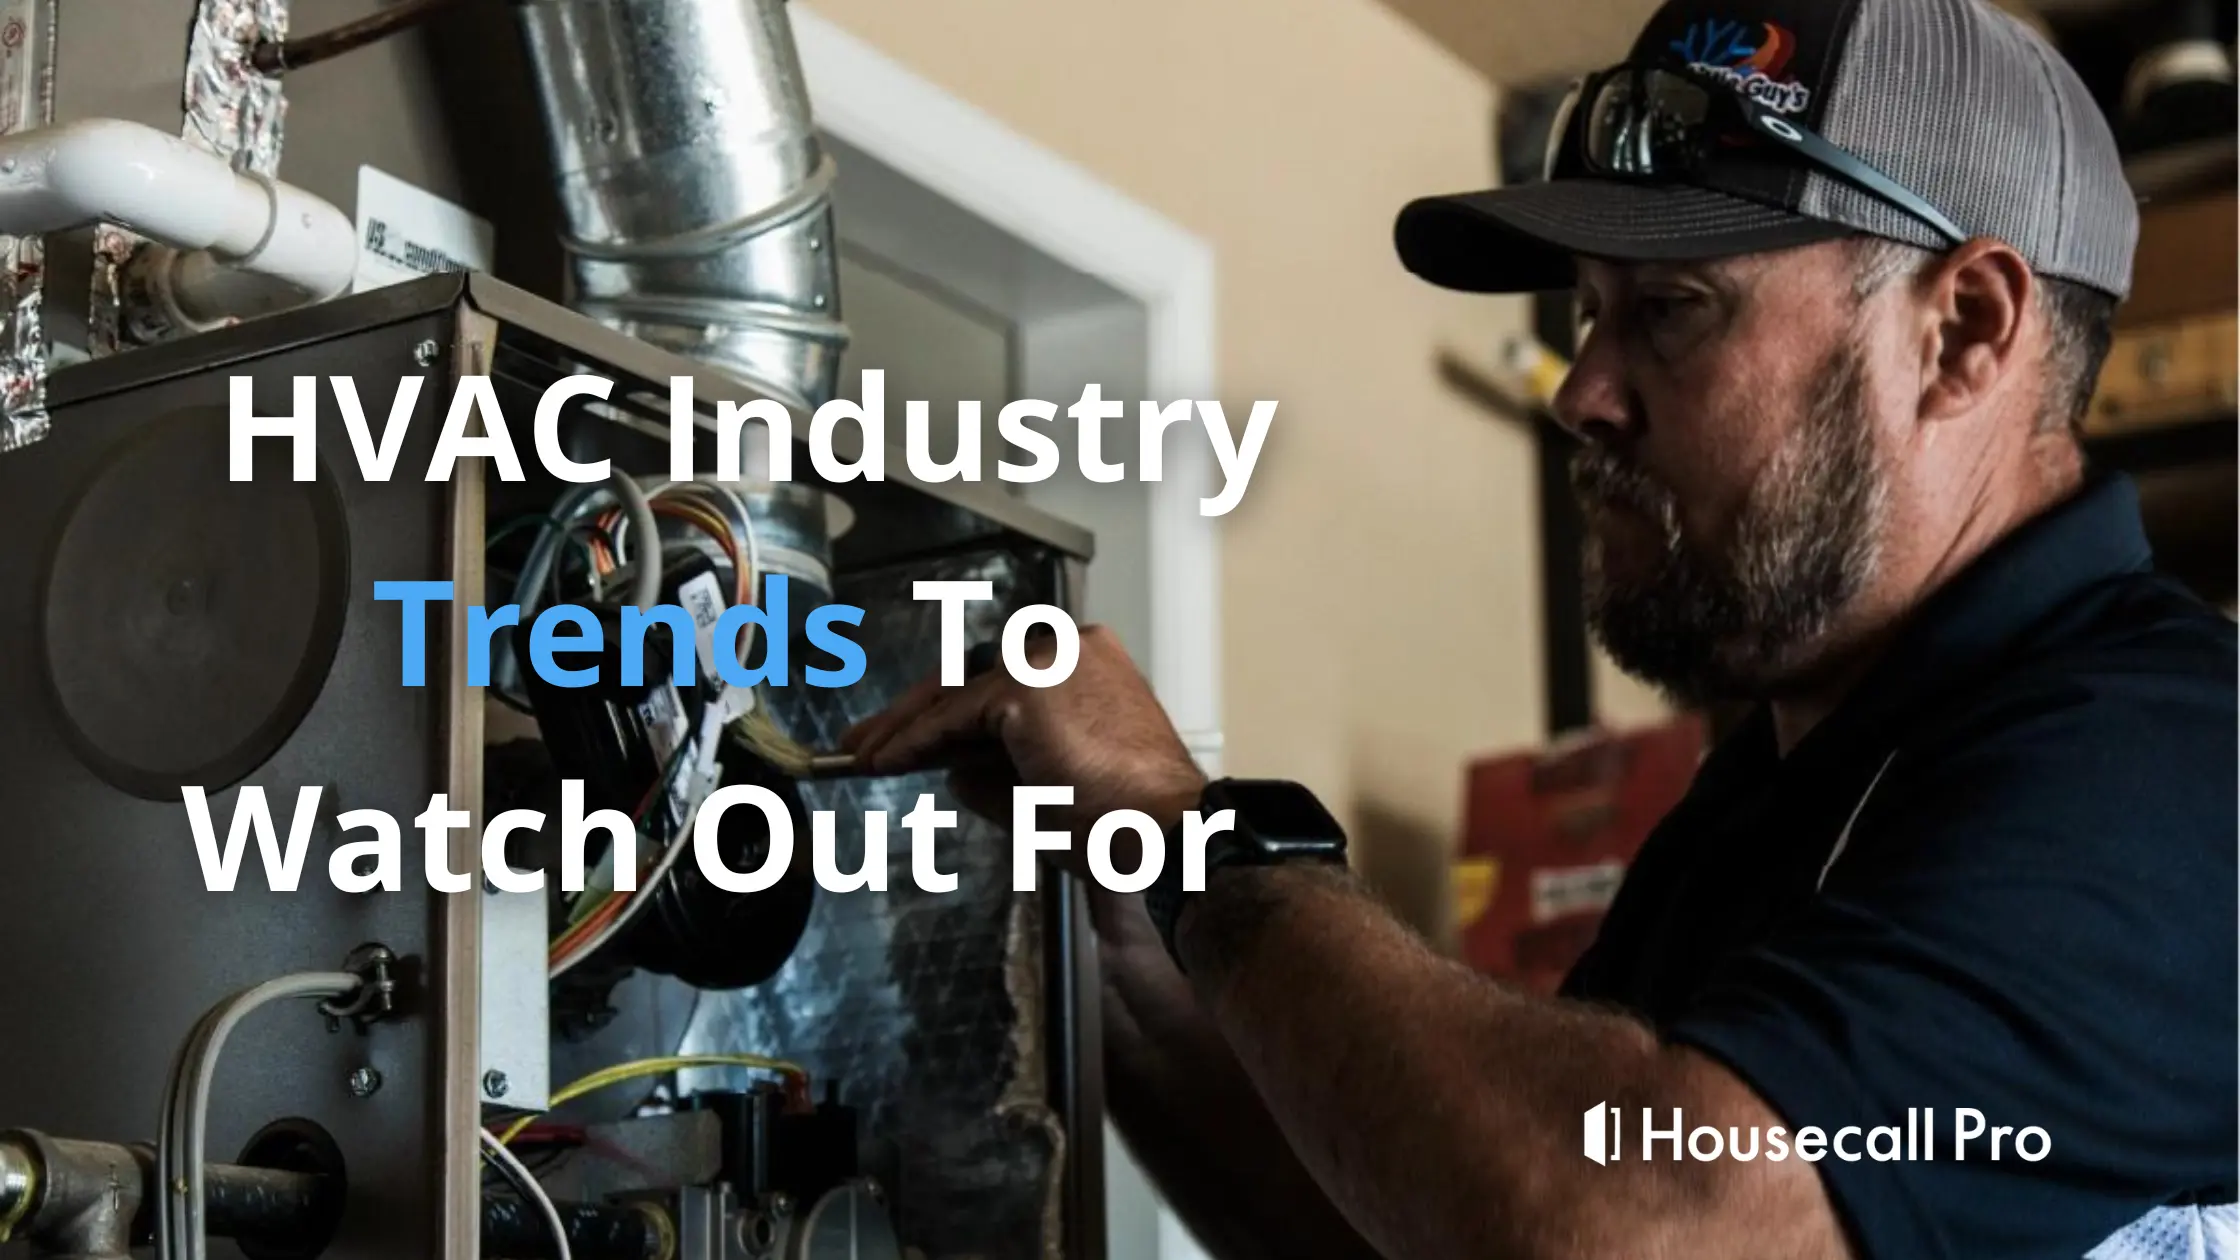 HVAC industry trends blog banner